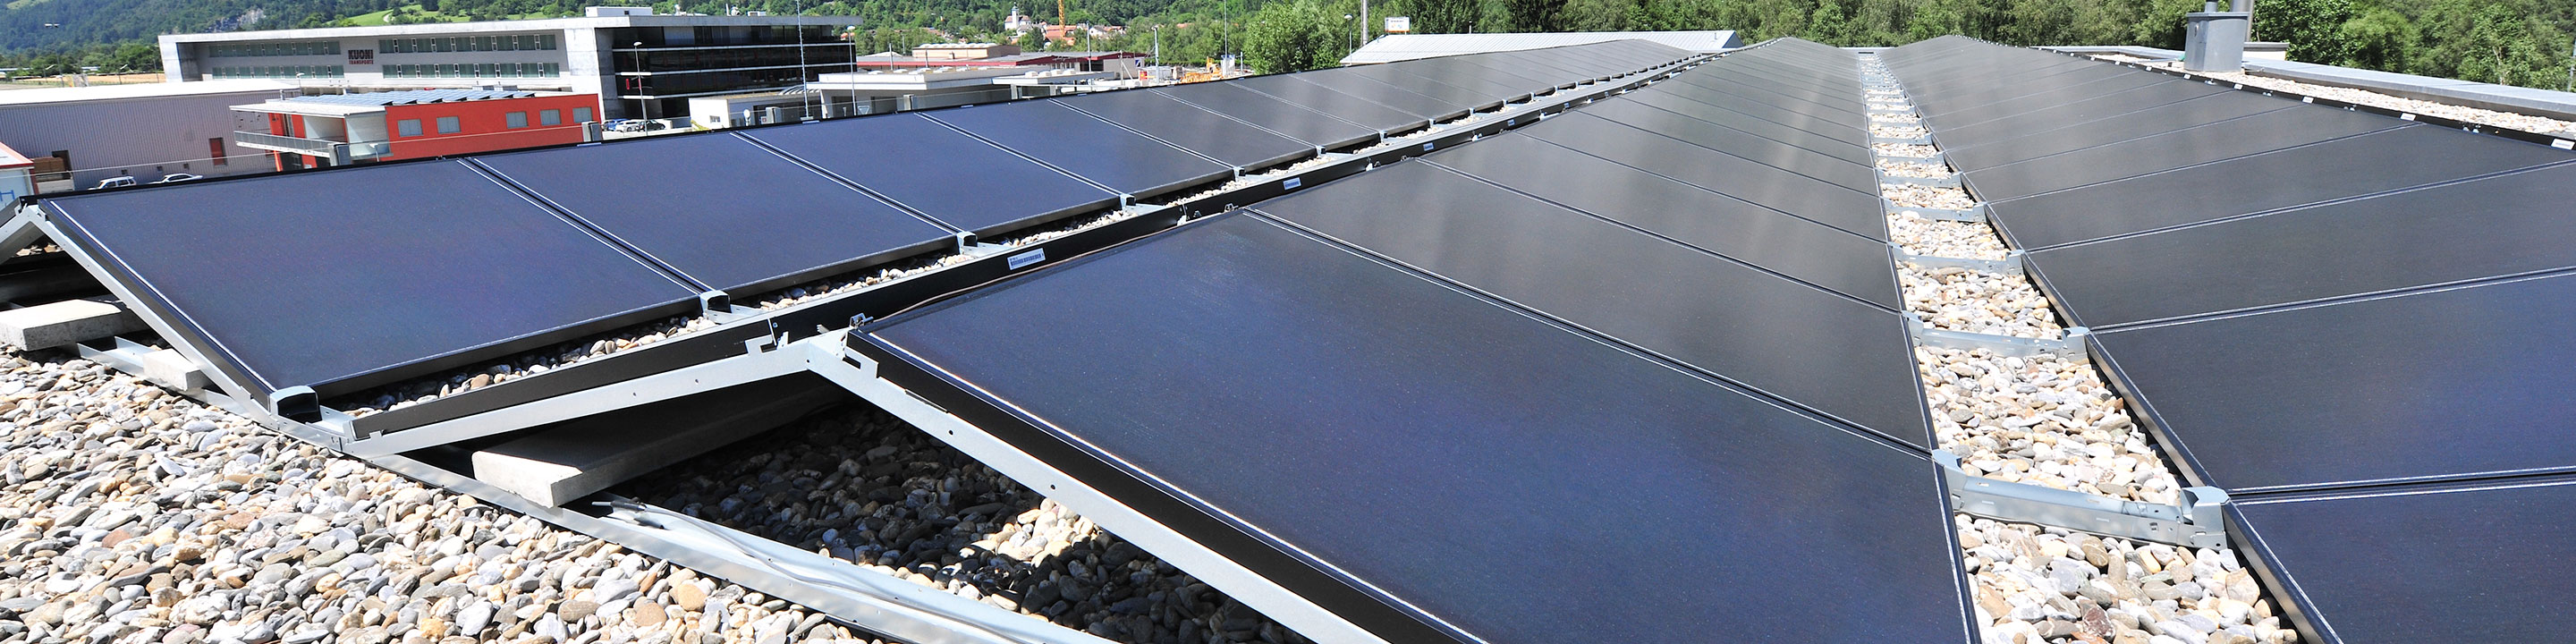 [Translate to Niederländisch:] Photovoltaik-Unterkonstruktion mit Solarpanels in Ost-West-Ausrichtung von Richard Brink auf Flachdach mit Kies